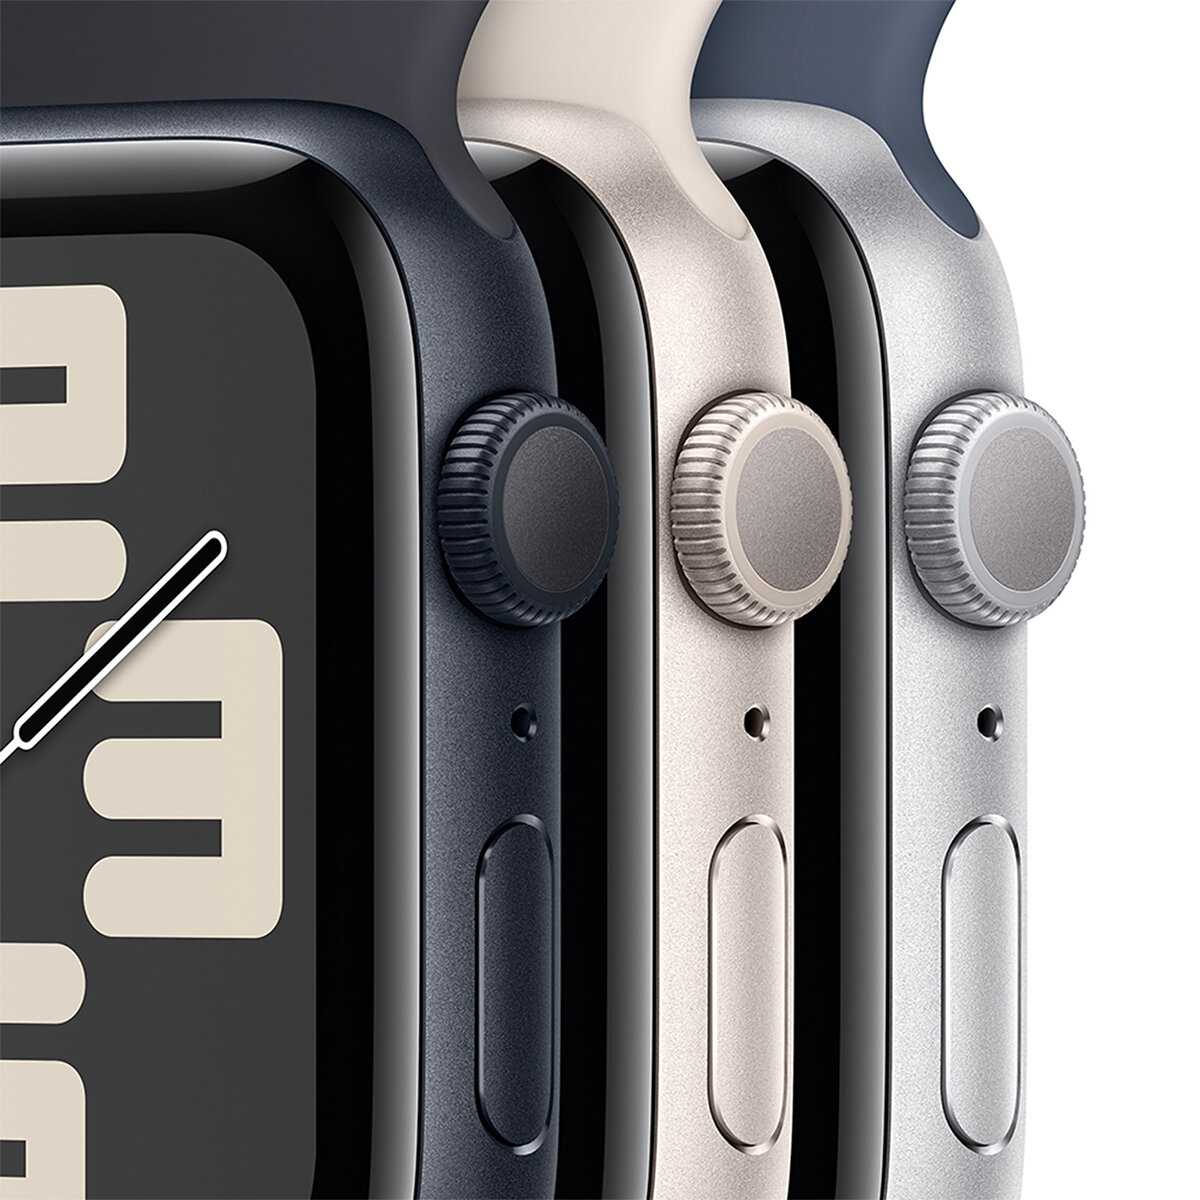 Apple Watch SE (GPS) Caja de aluminio medianoche 40mm con Correa deportiva medianoche 